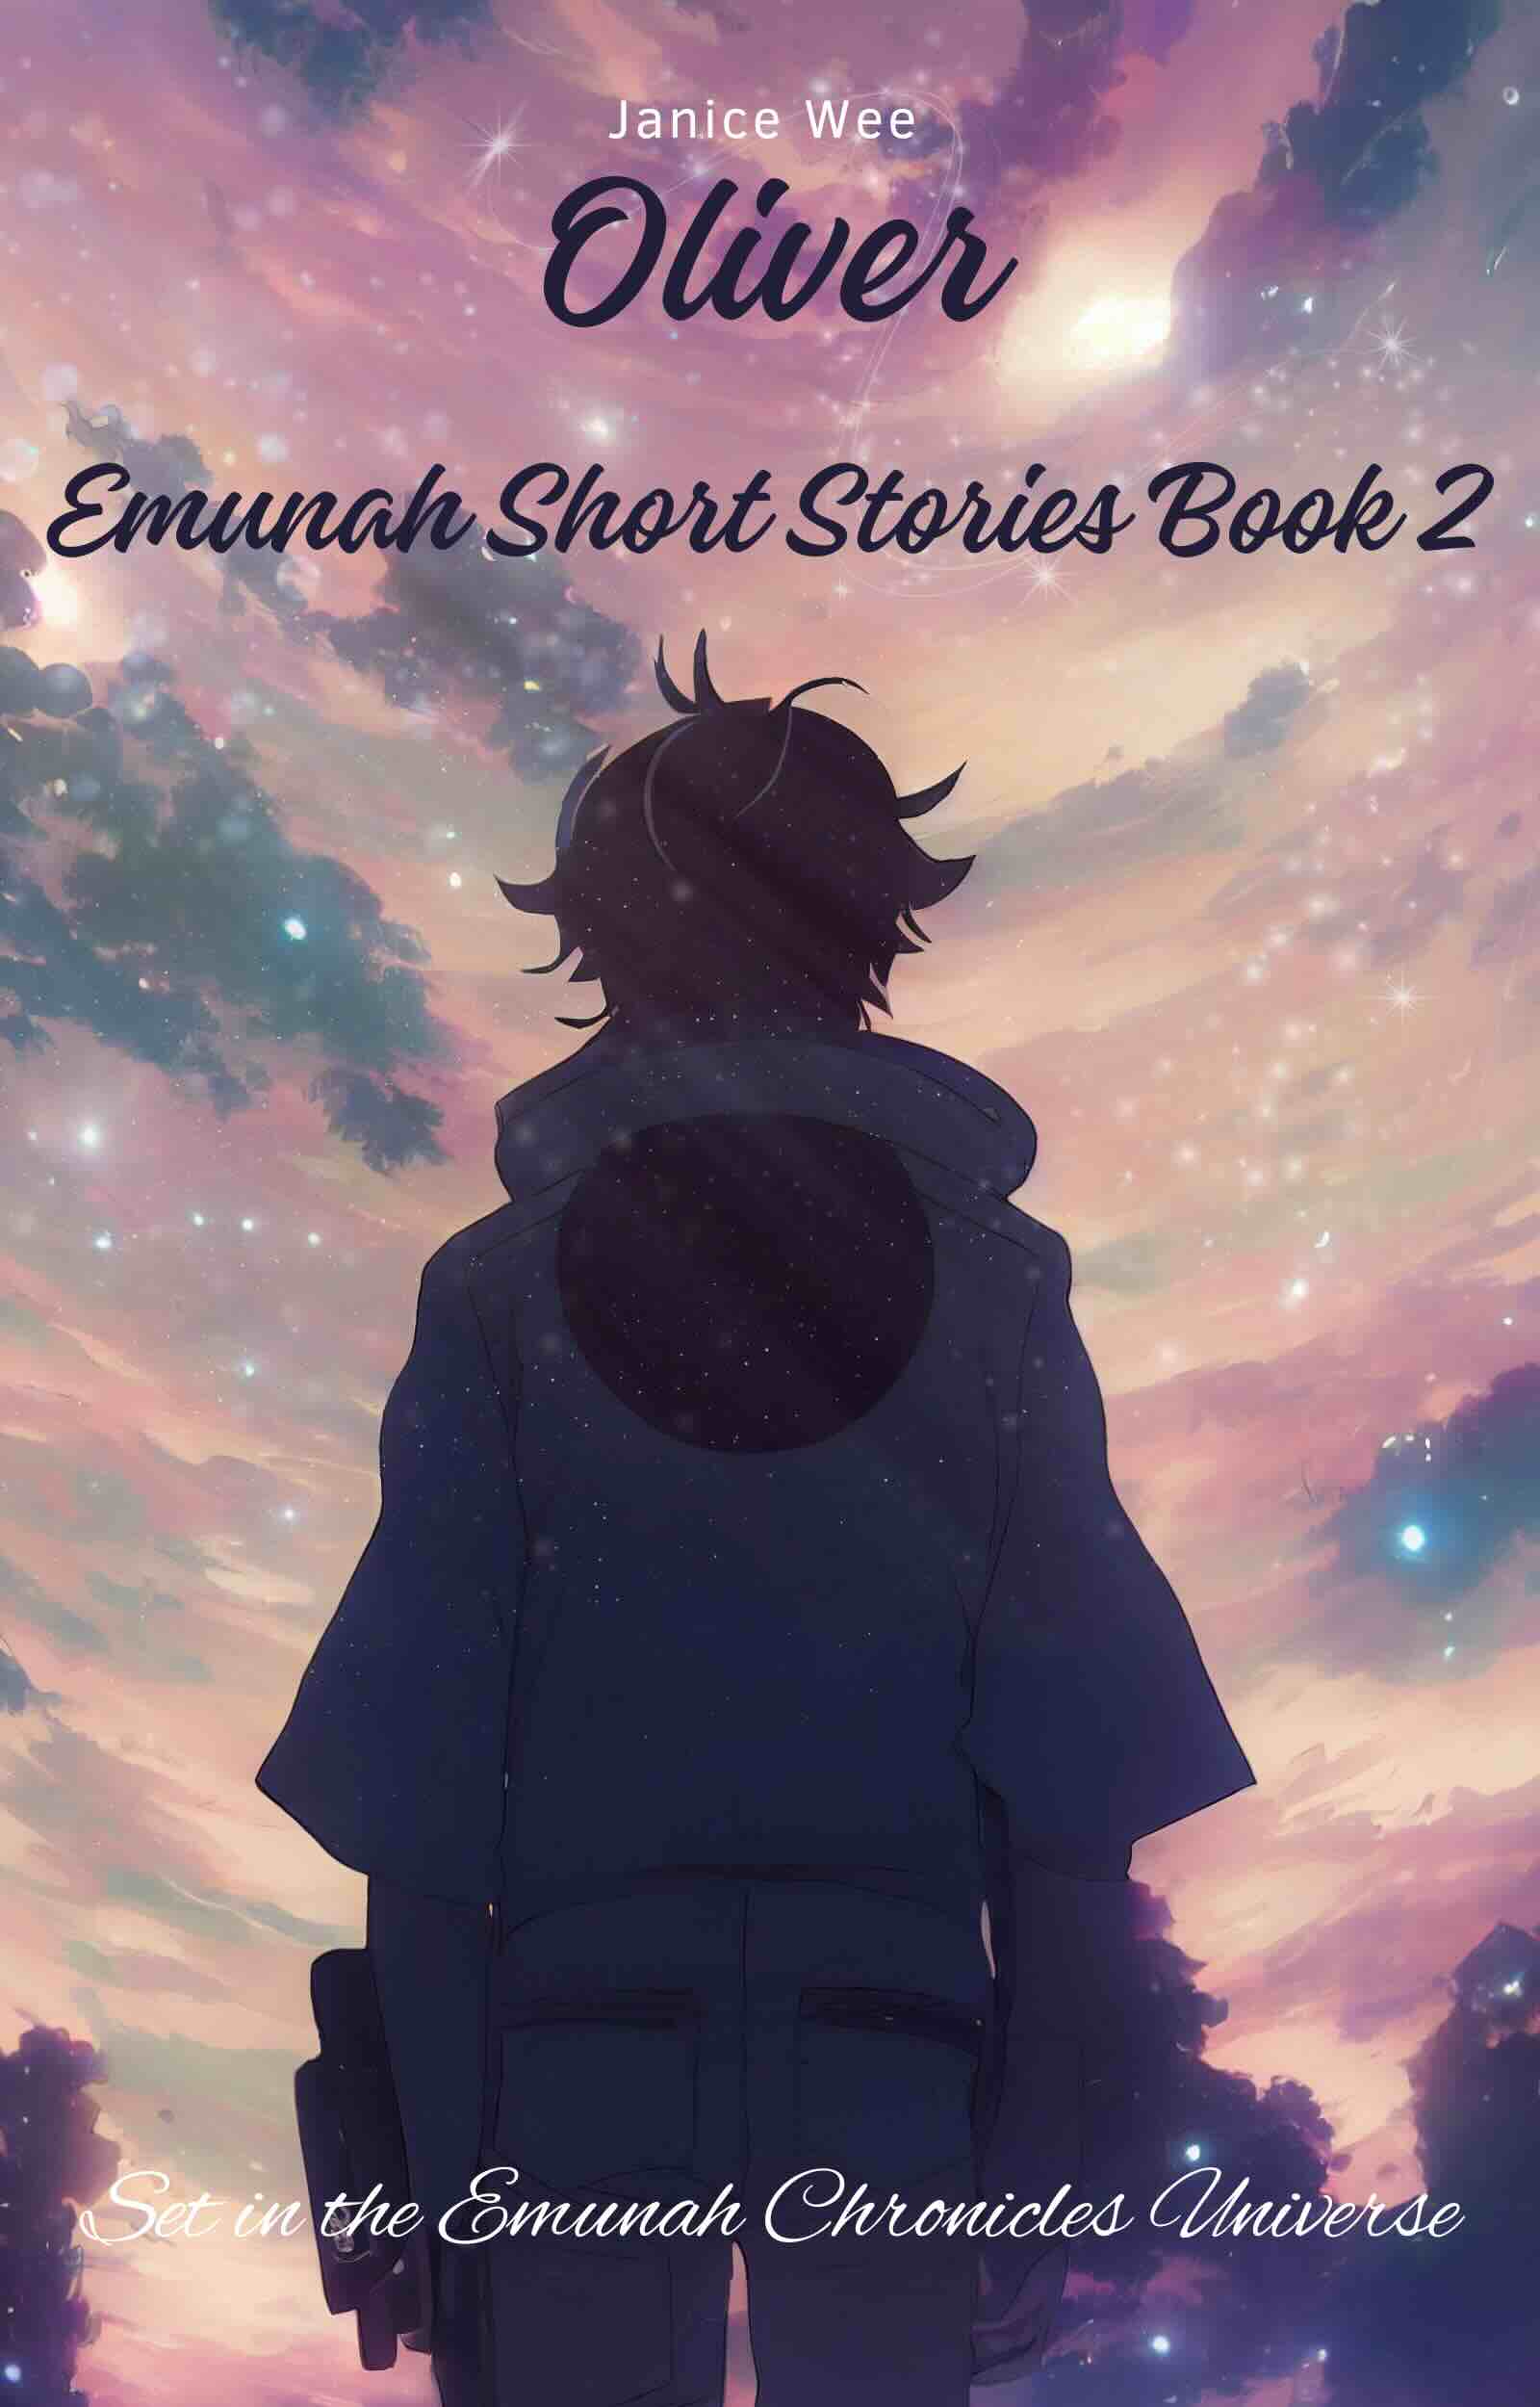 Emunah Short Stories Book 2 Oliver